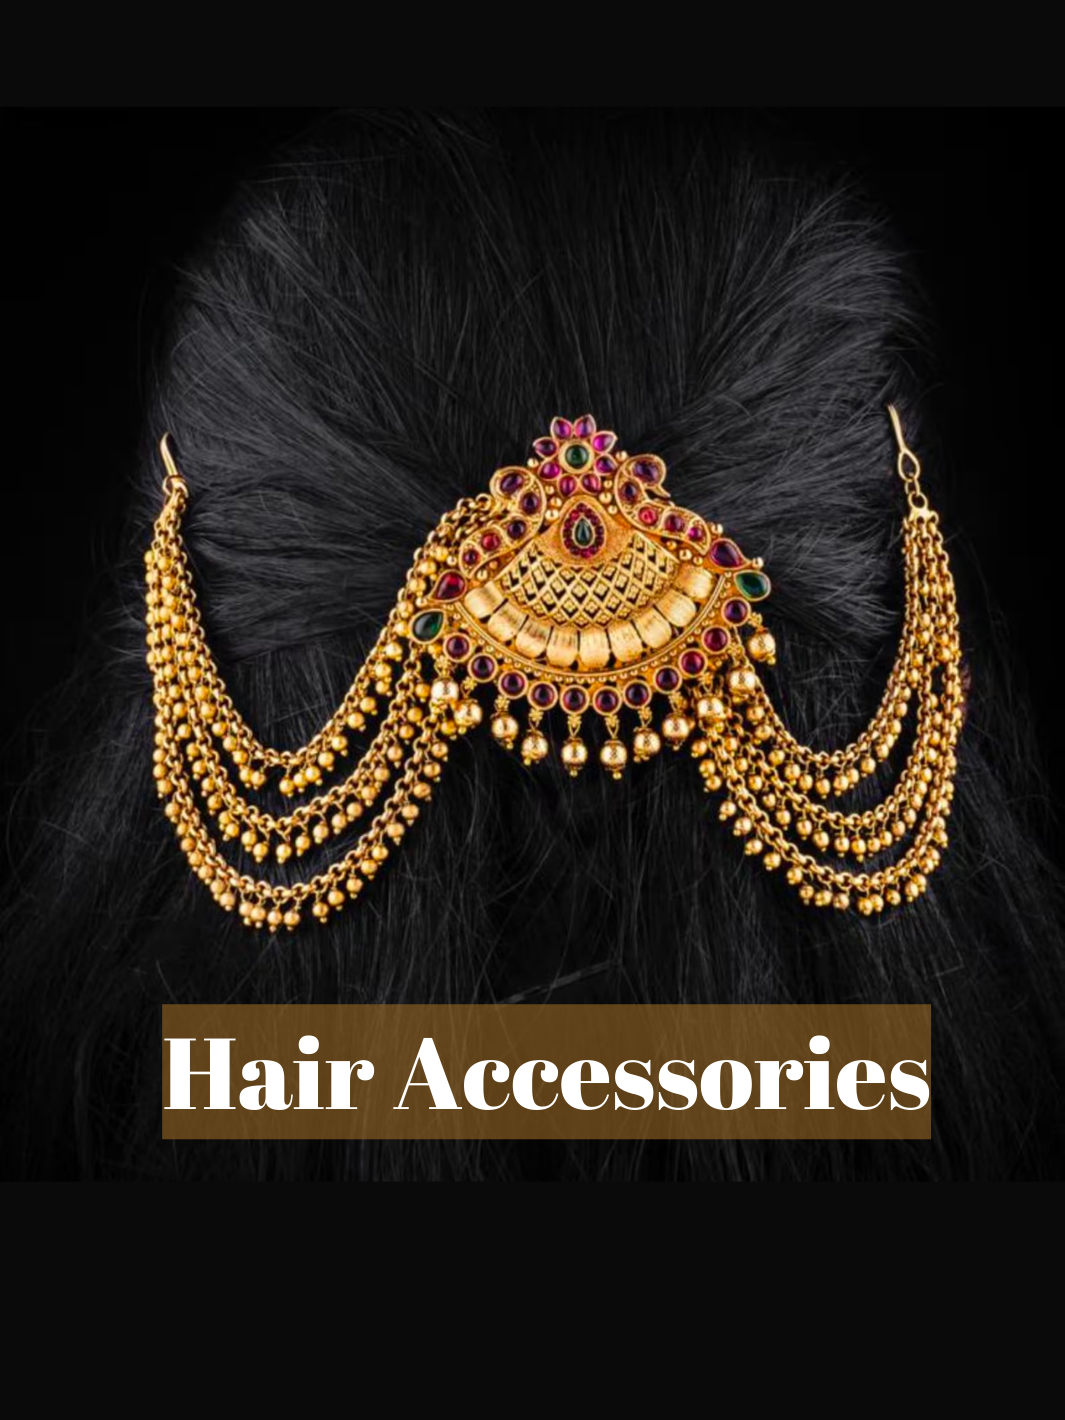 Hair accessories